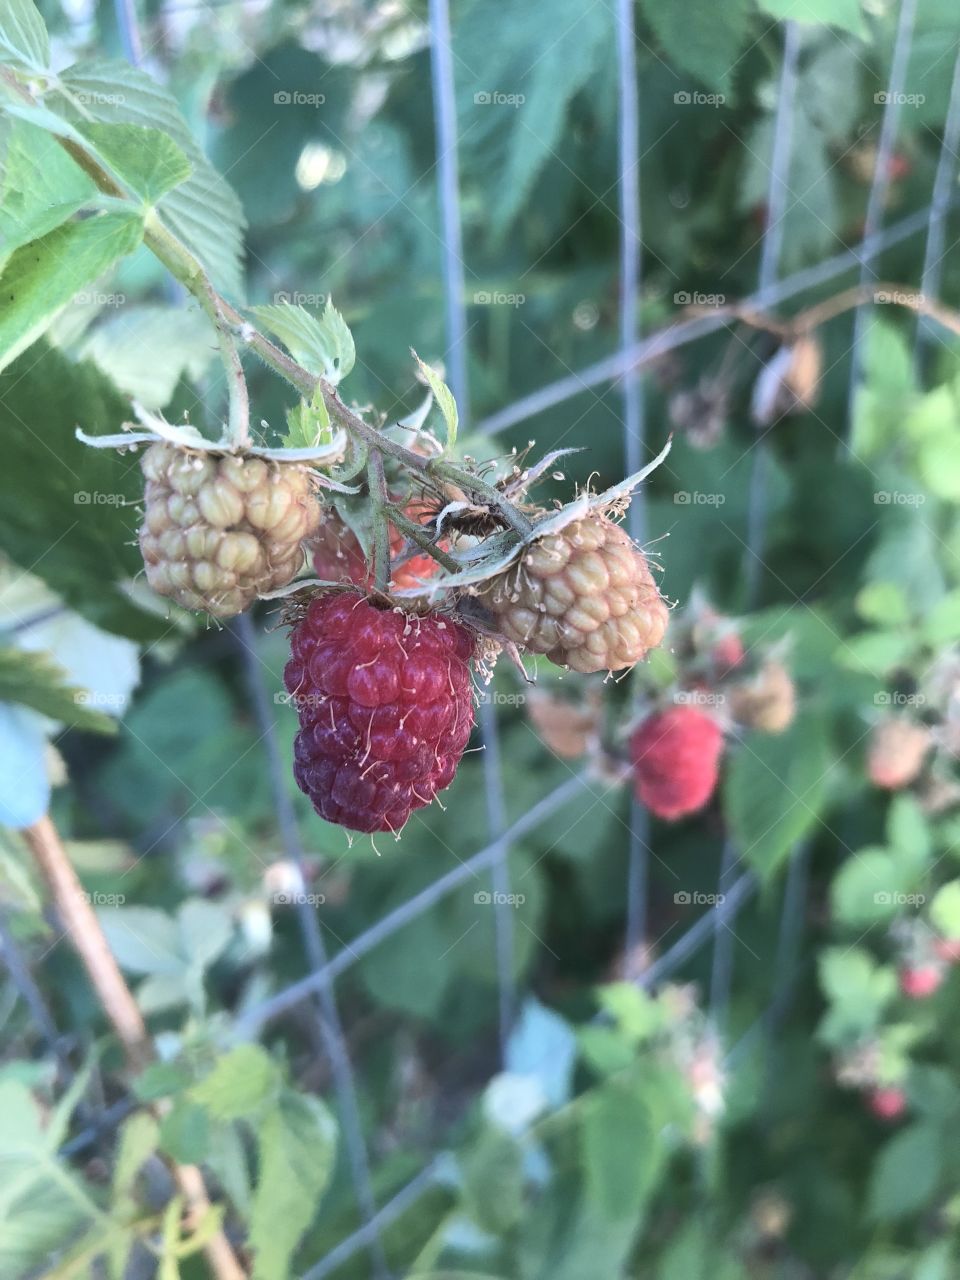 Garden raspberries